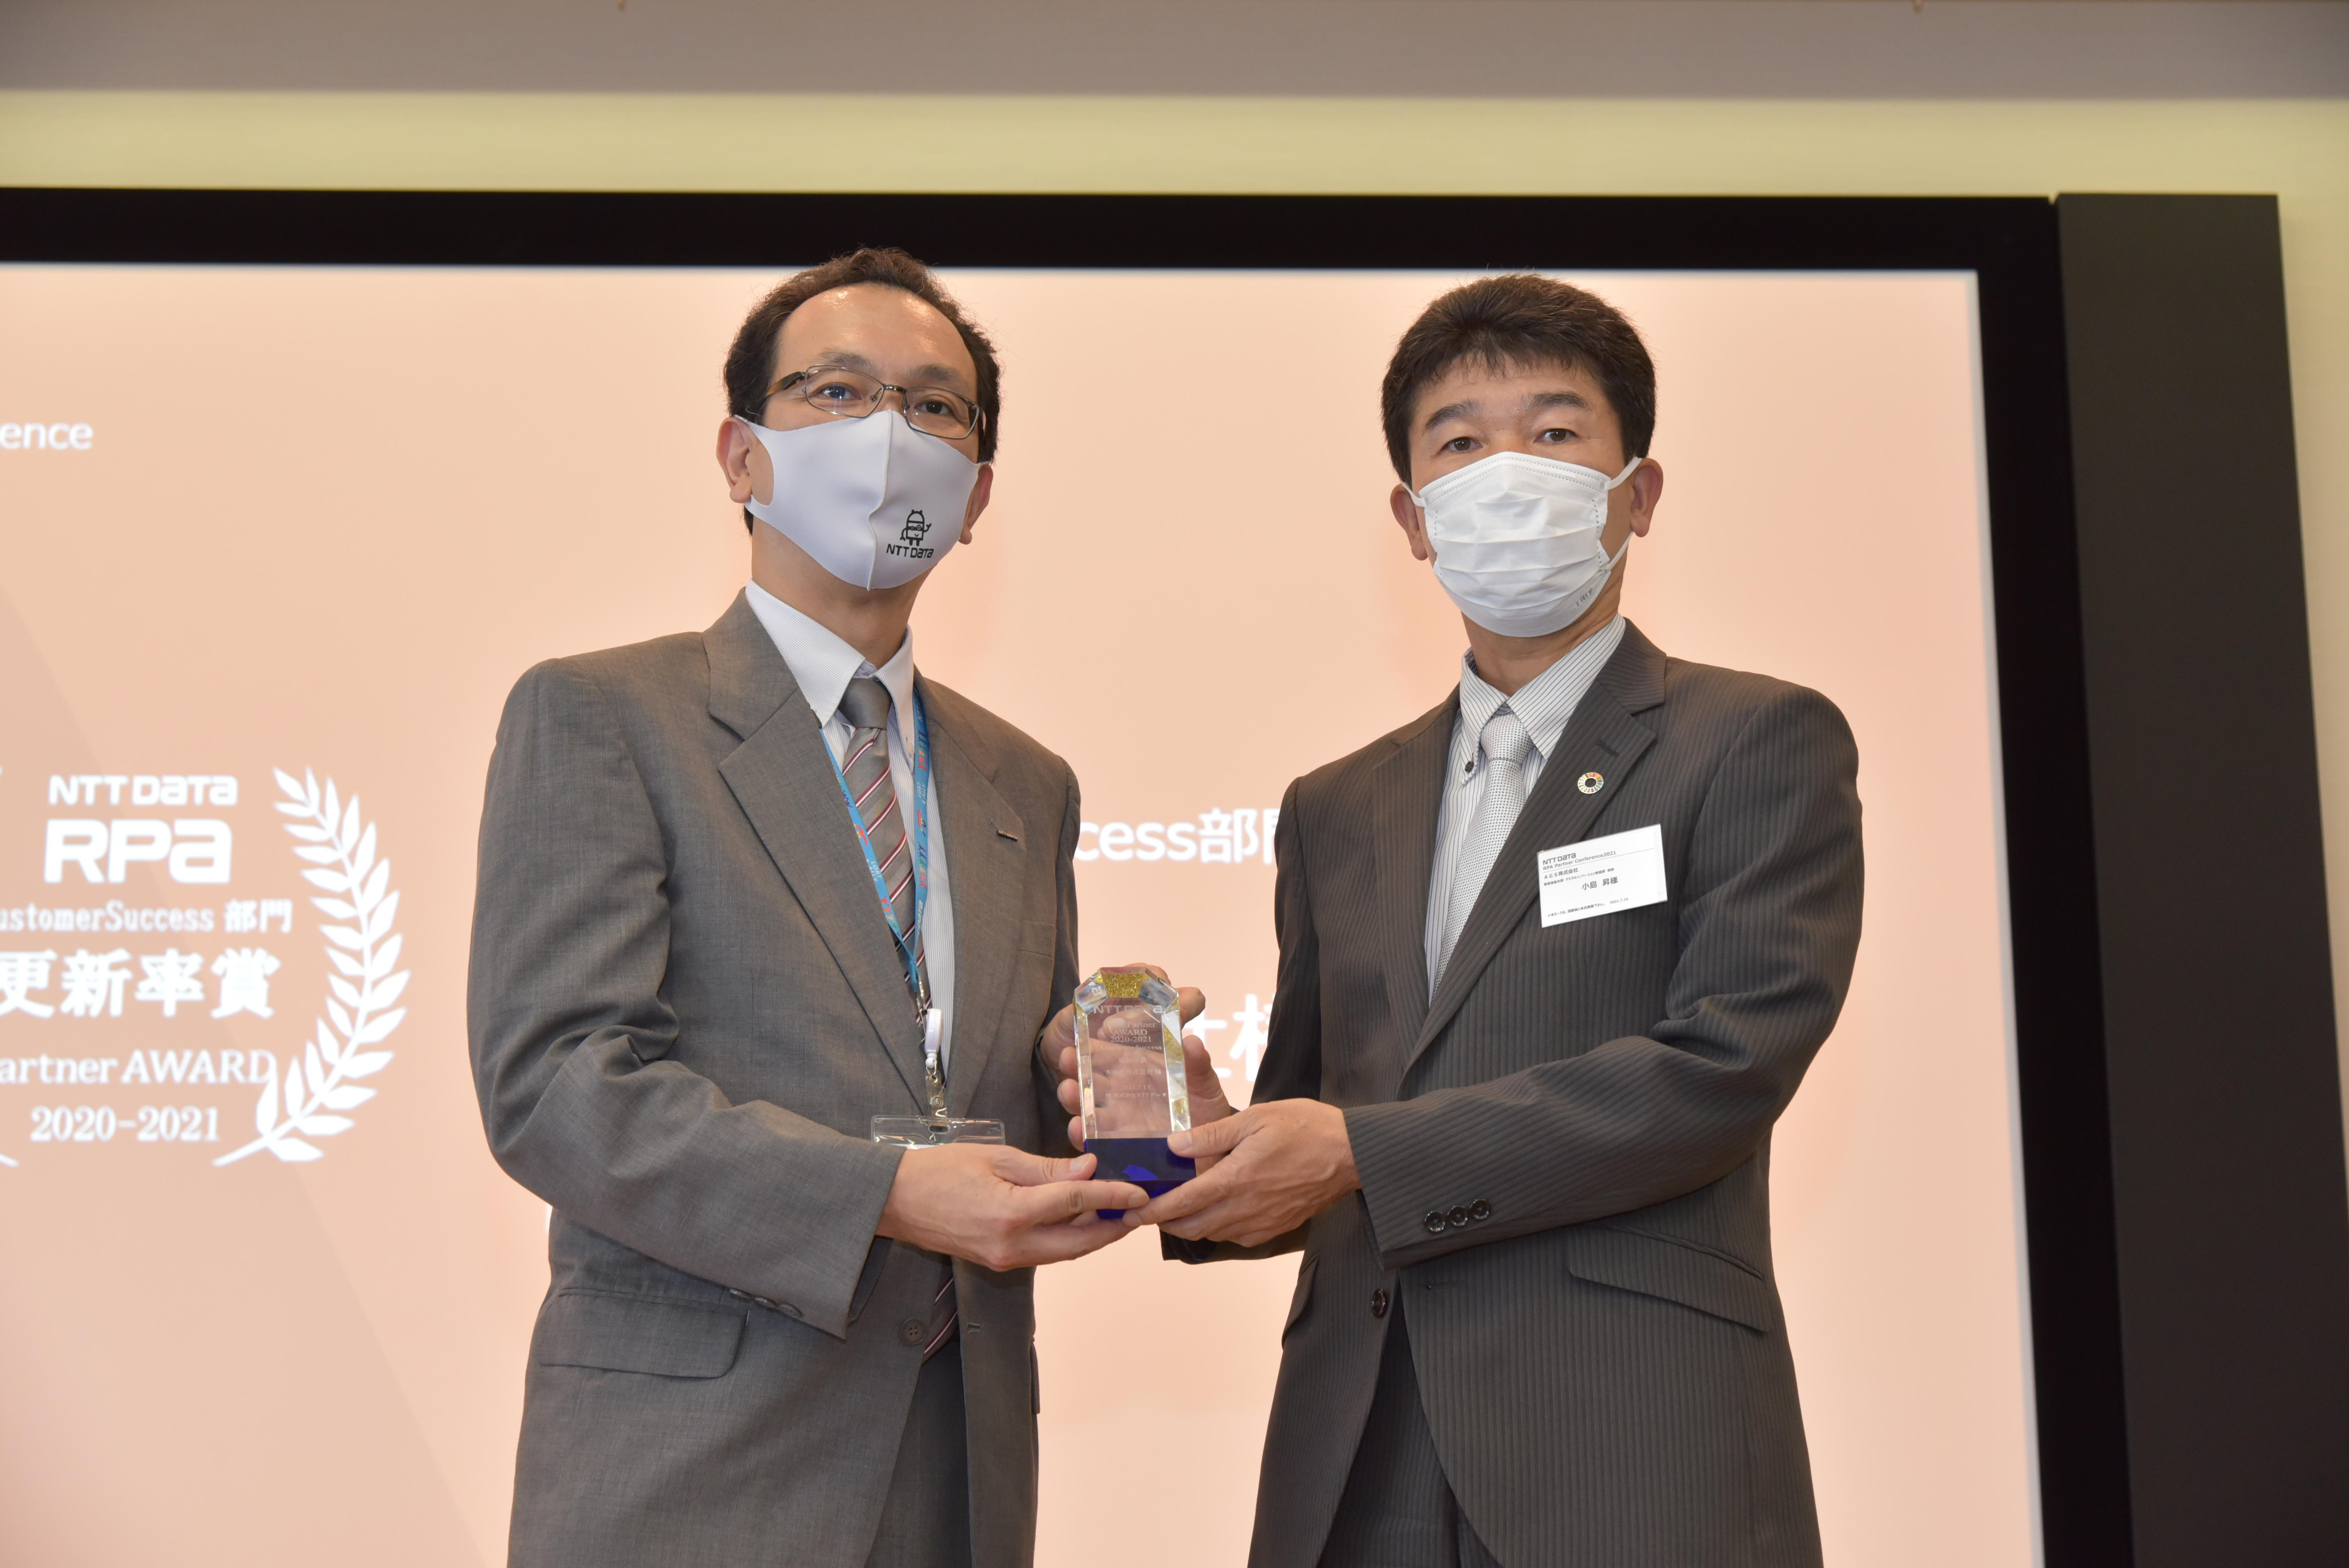 「NTT DATA RPA Partner AWARD 2020-2021」カスタマーサクセス部門「更新率賞」受賞